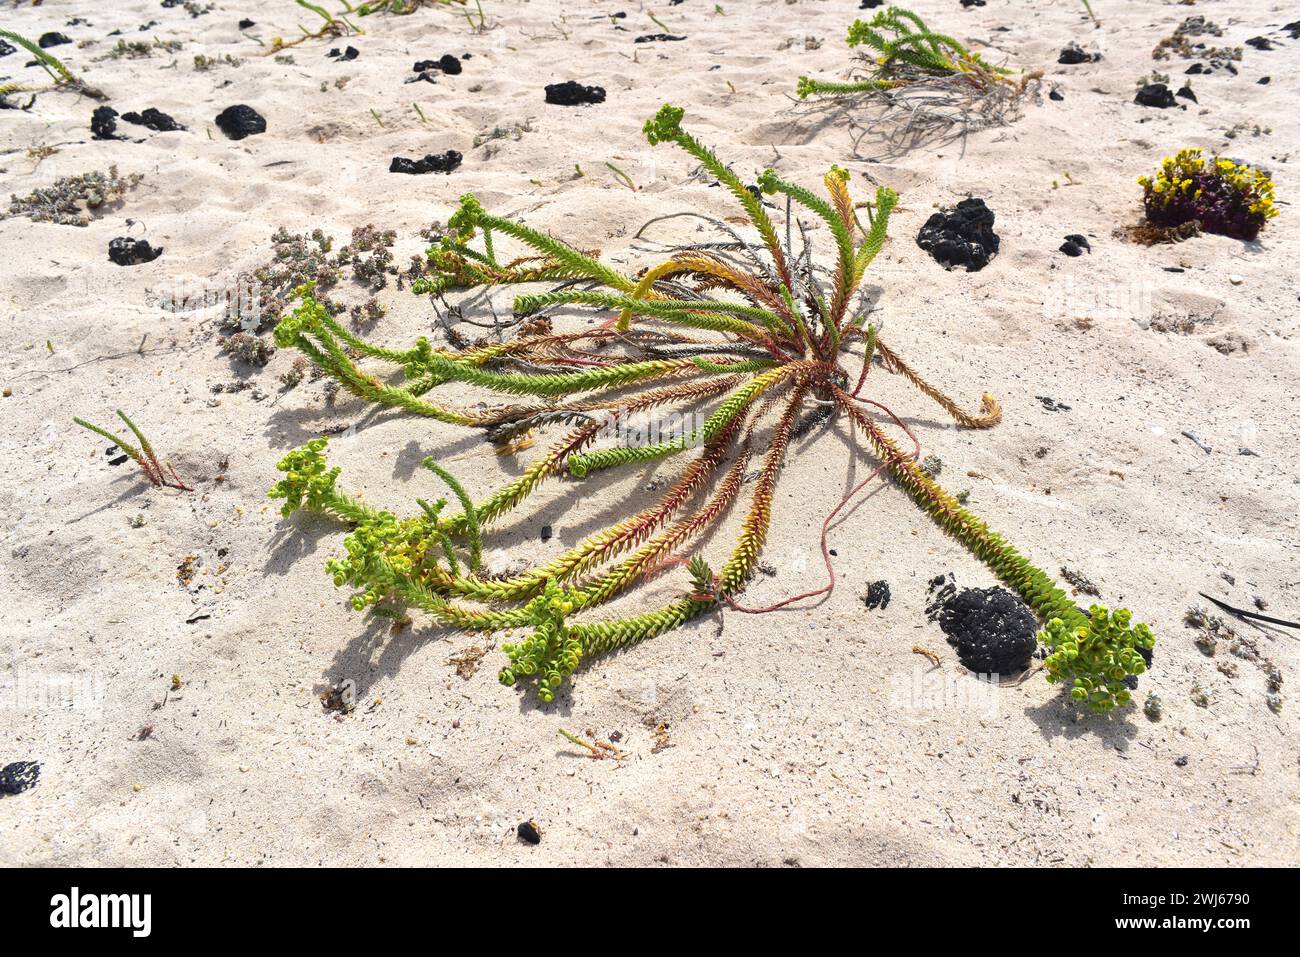 Sea spurge (Euphorbia paralias) ist ein ausdauerndes Kraut, das auf den Kanarischen Inseln, den Küsten Europas, Nordafrika und Westasien beheimatet ist. Dieses Foto wurde aufgenommen Stockfoto